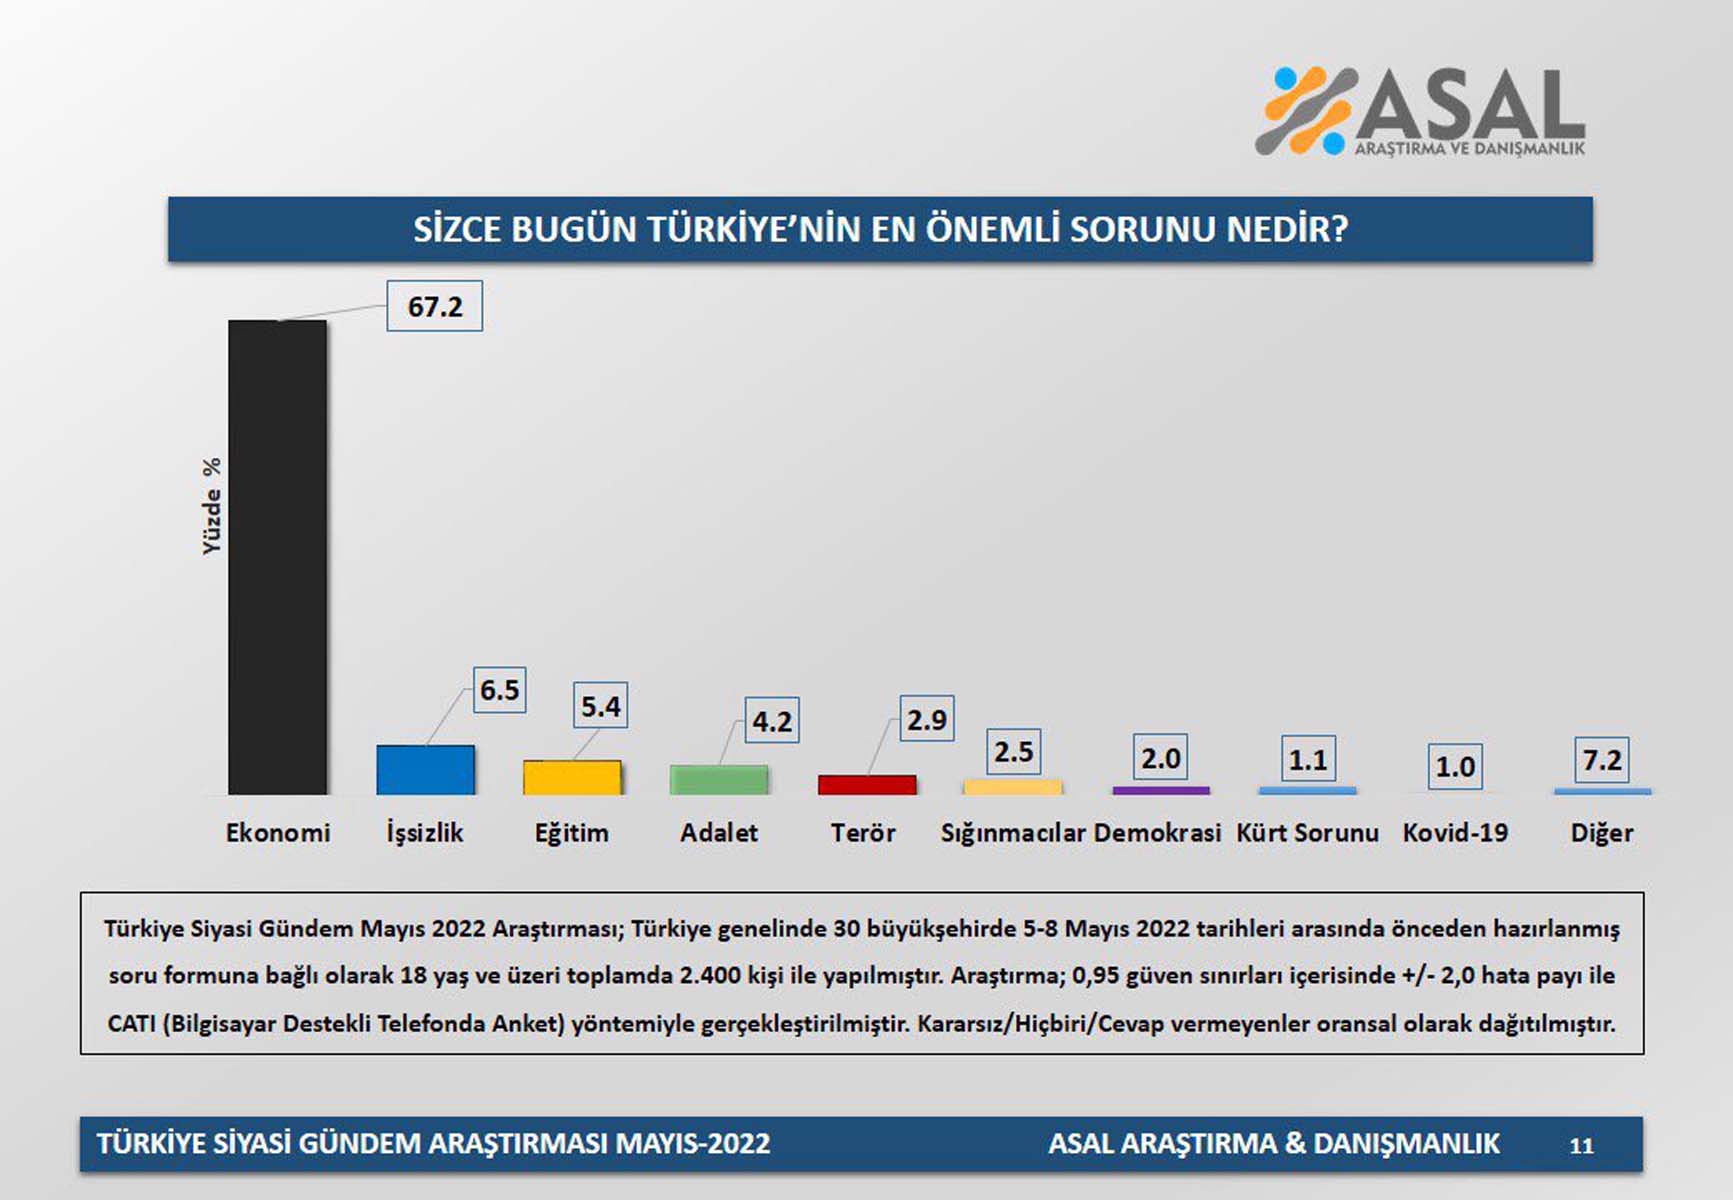 Vatandaşlara soruldu: Türkiye'nin en önemli sorunu nedir? Ankete katılanların çoğu aynı görüşte! 